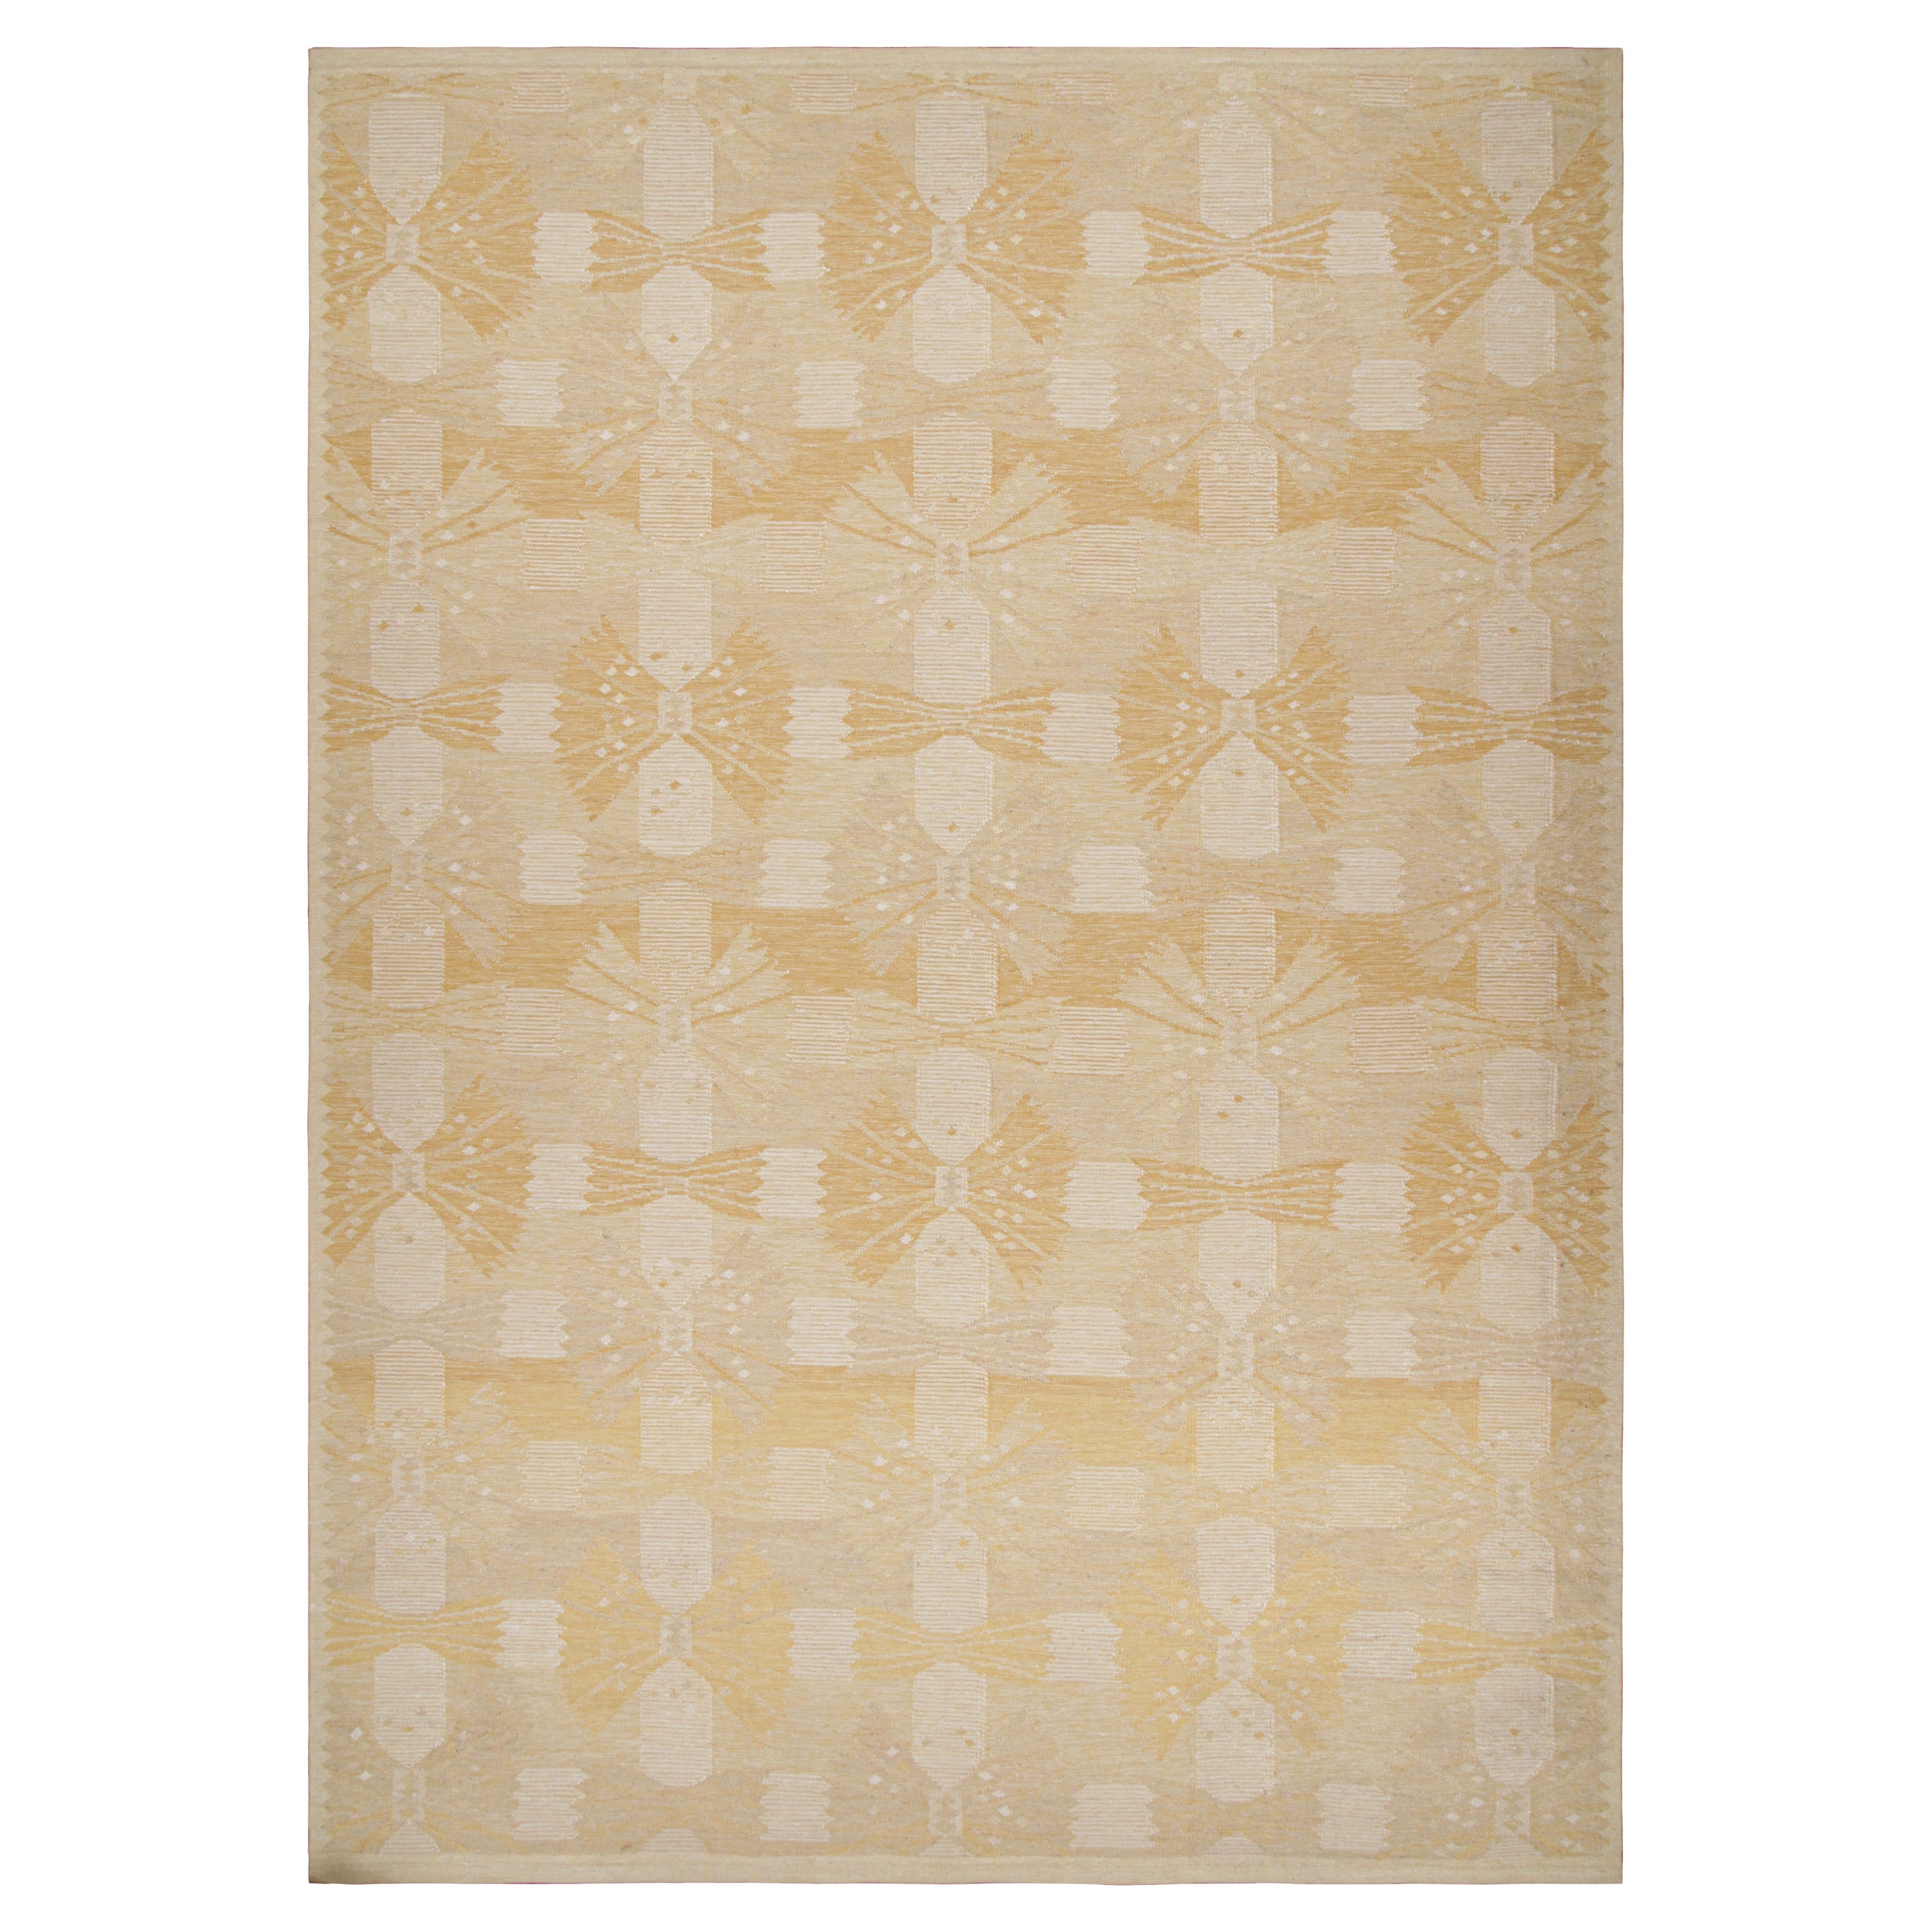 Rug & Kilim's Teppich im skandinavischen Stil mit geometrischen Mustern in Gold und Beige 